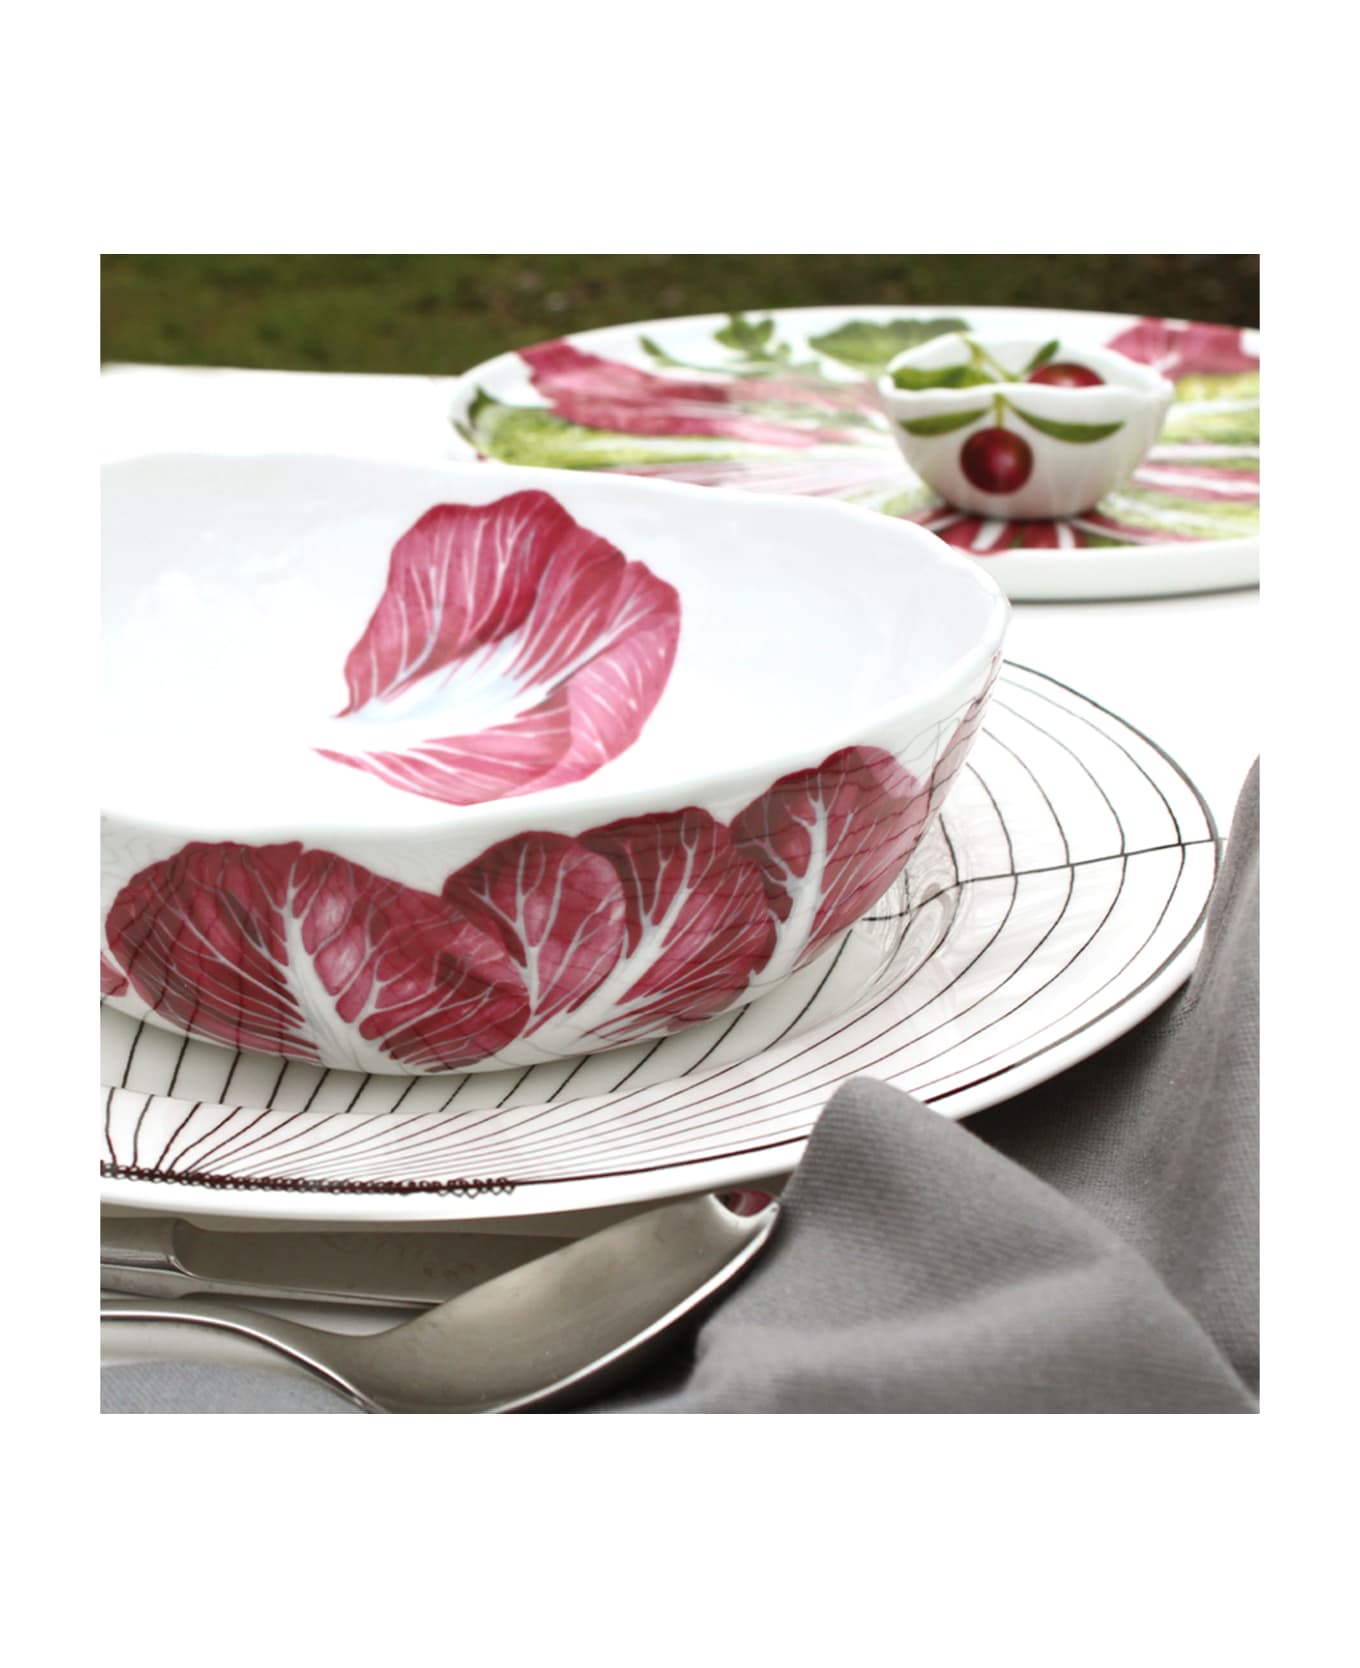 Taitù Medium Bowl RADICCHIO - Dieta Mediterranea Vegetables Collection - Purple